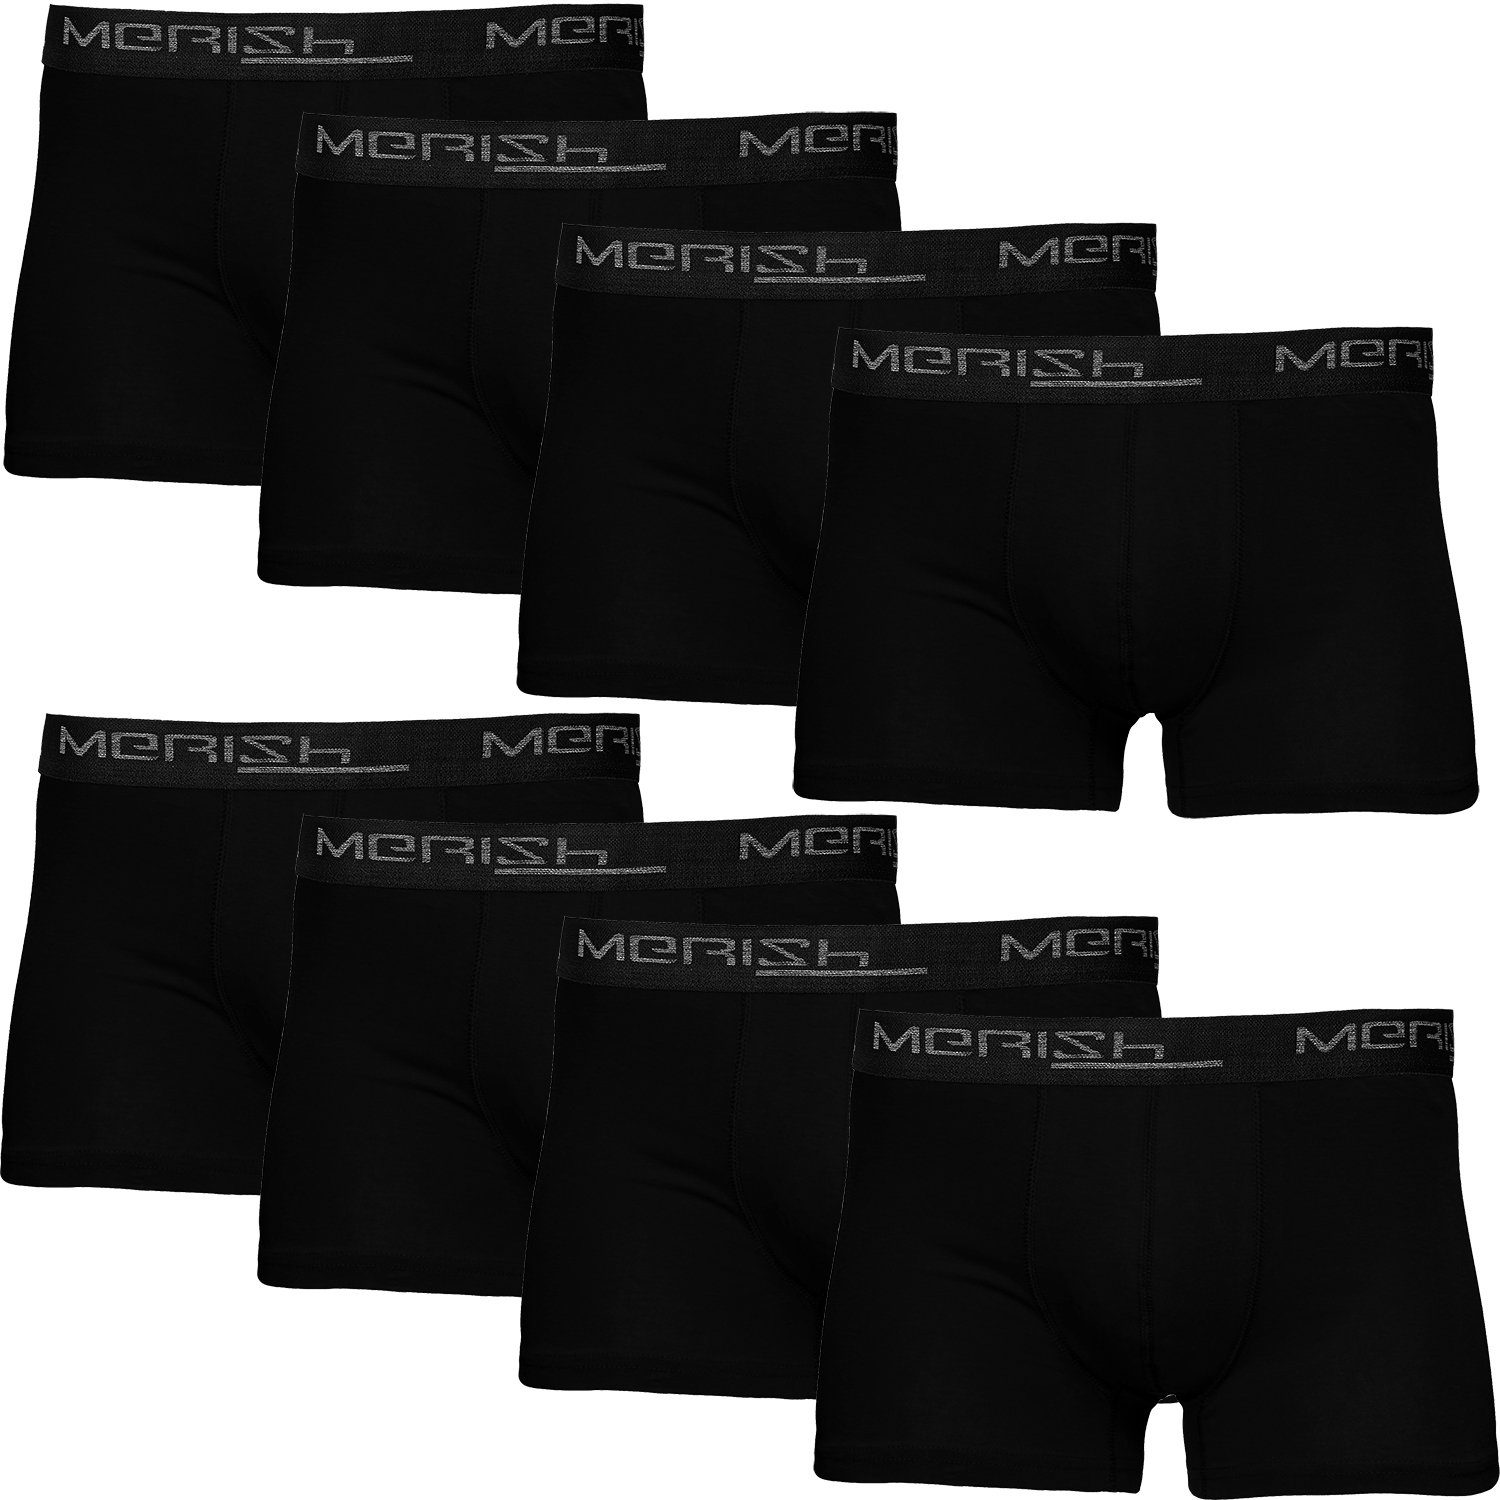 Herren Männer S Qualität Boxershorts MERISH (Vorteilspack, Premium Passform Baumwolle 216i-schwarz - perfekte 7XL 8er-Pack) Unterhosen